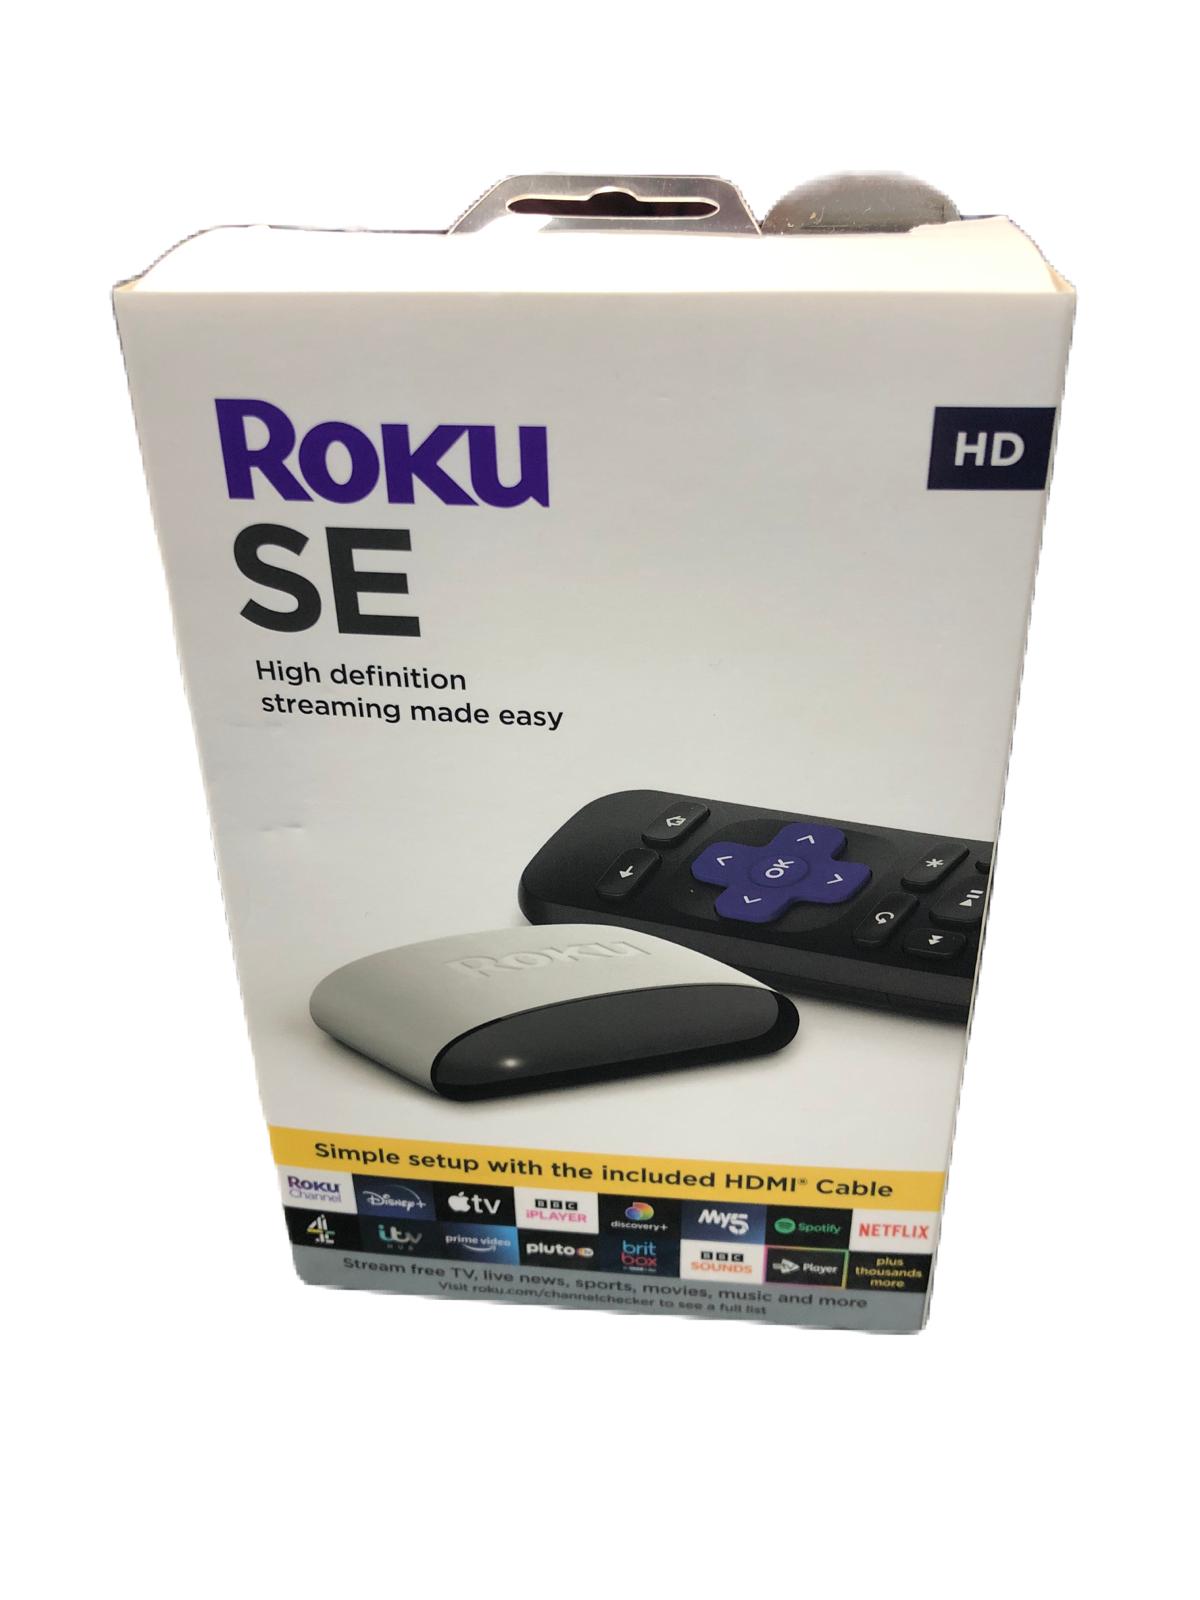 Roku SE HD Boxed 